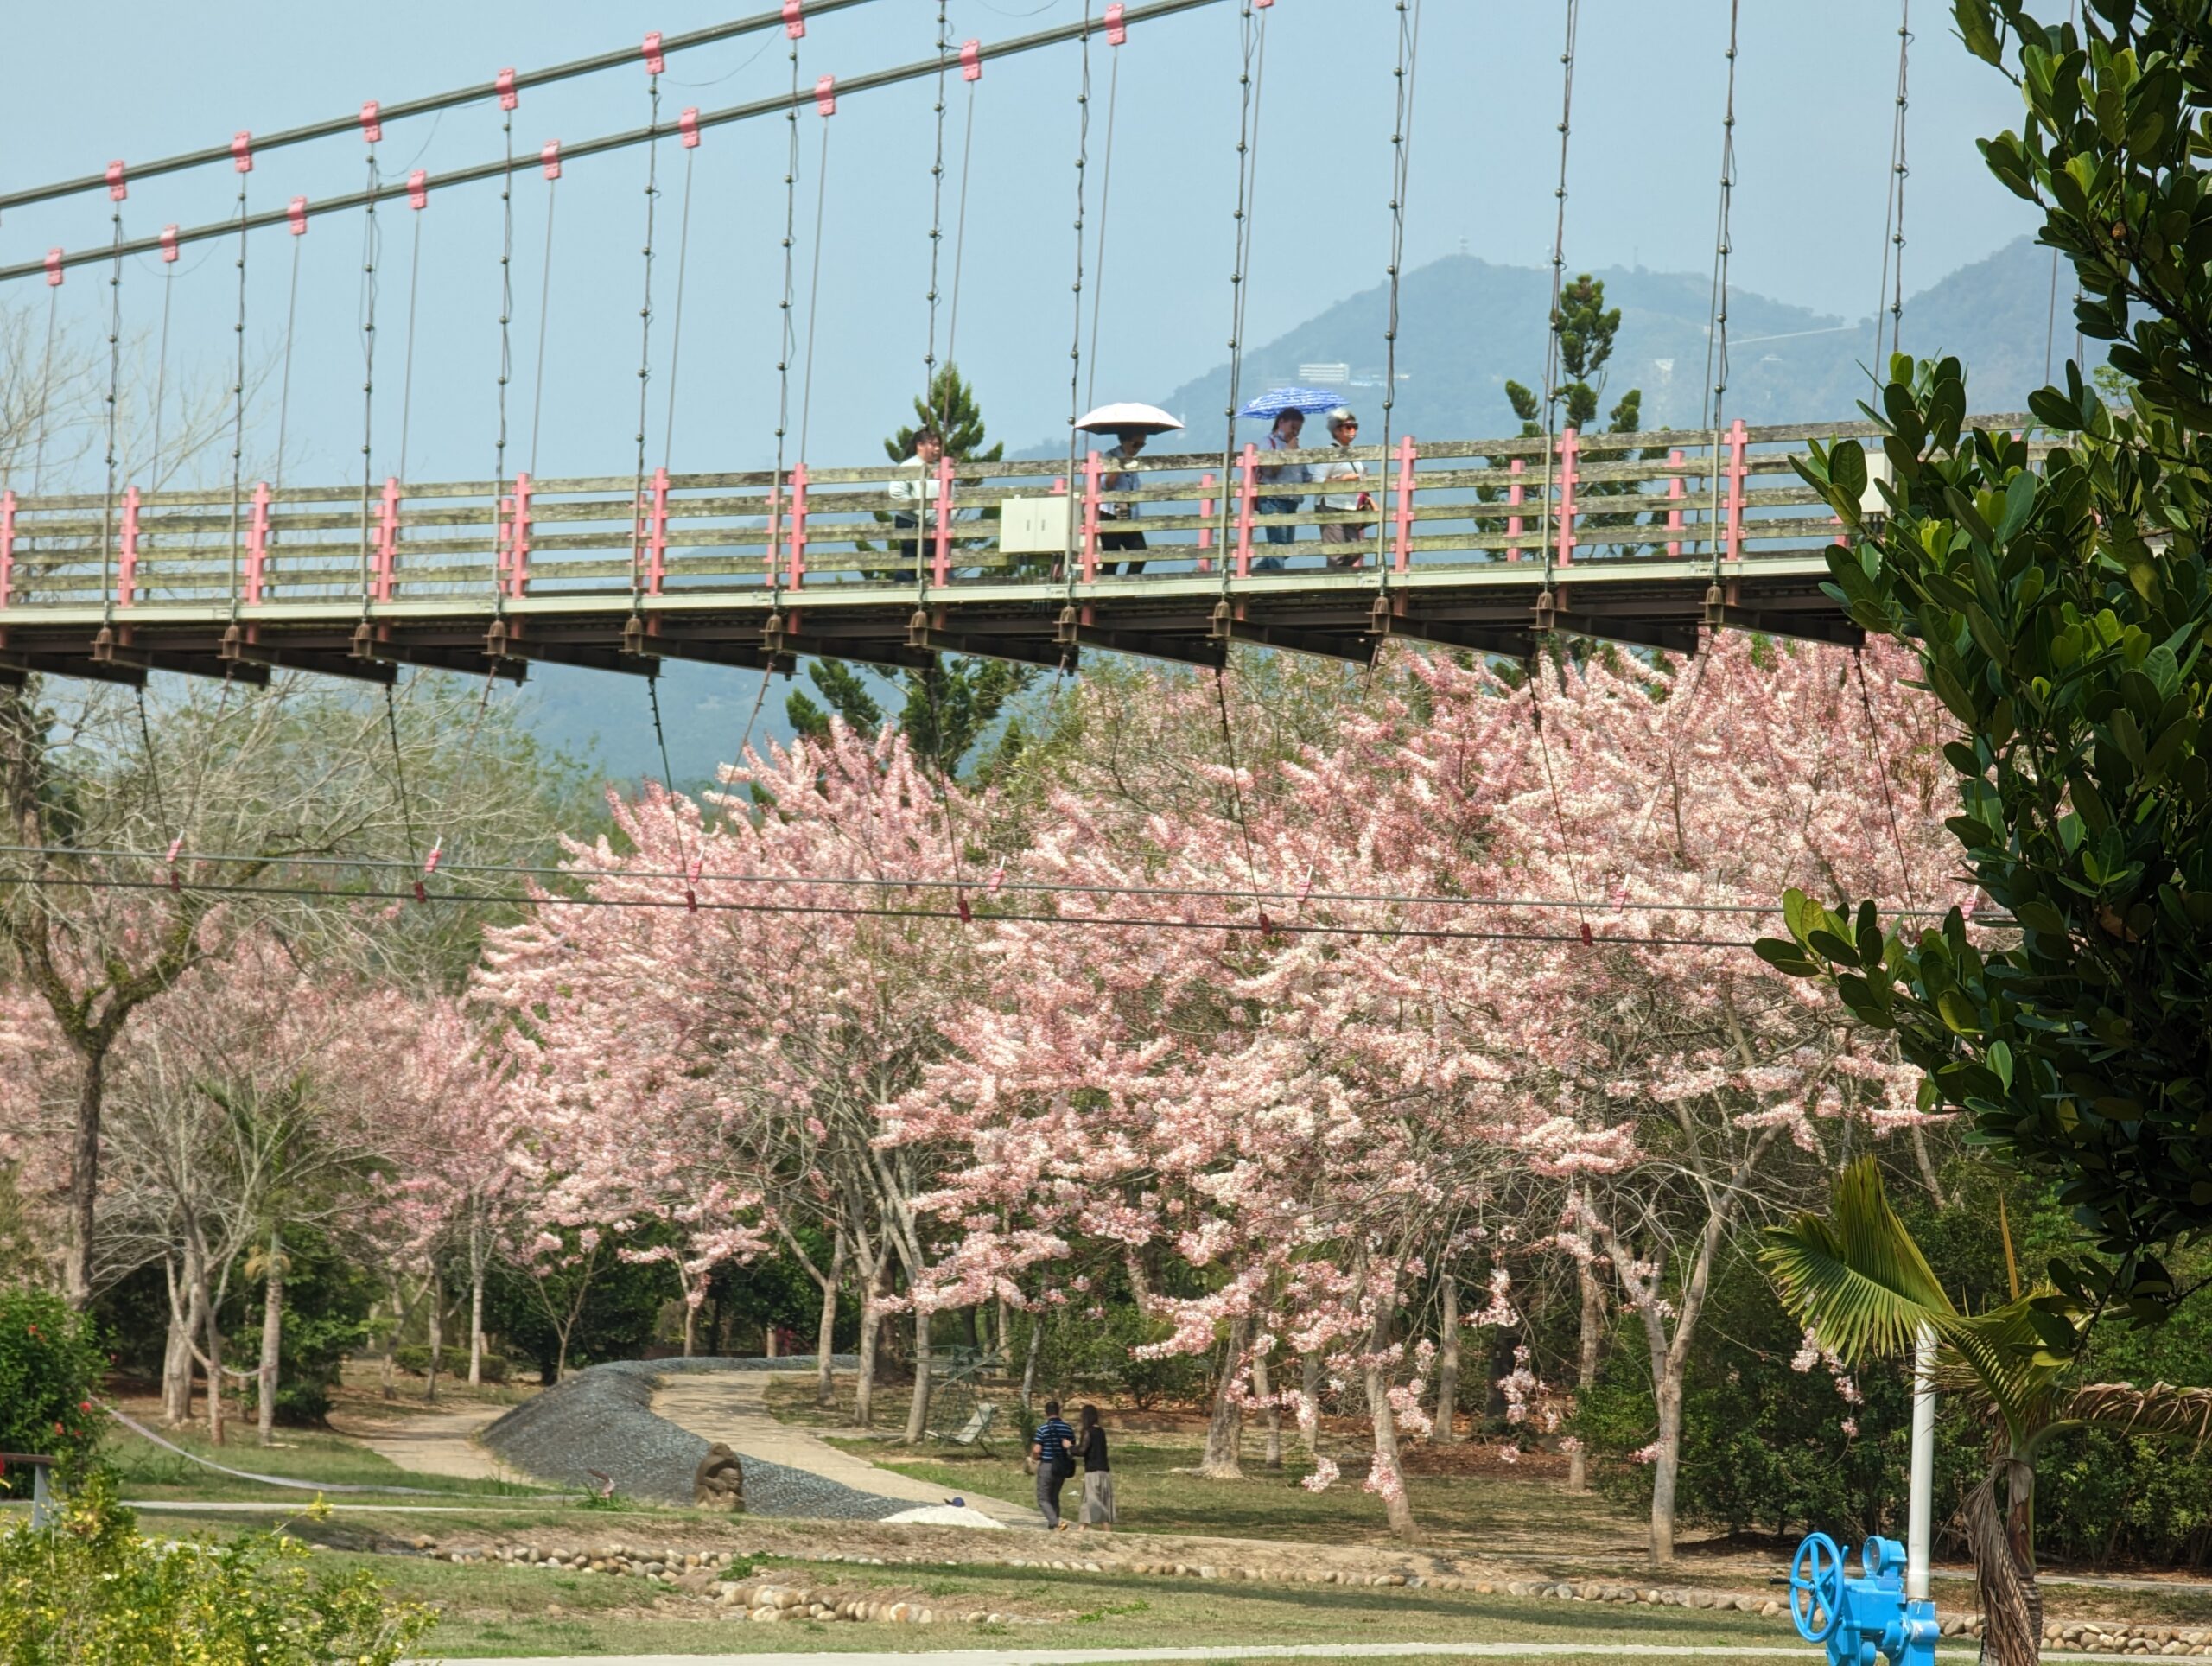 竹崎親水公園花旗木開了|順遊阿里山鐵路登山起點竹崎車站